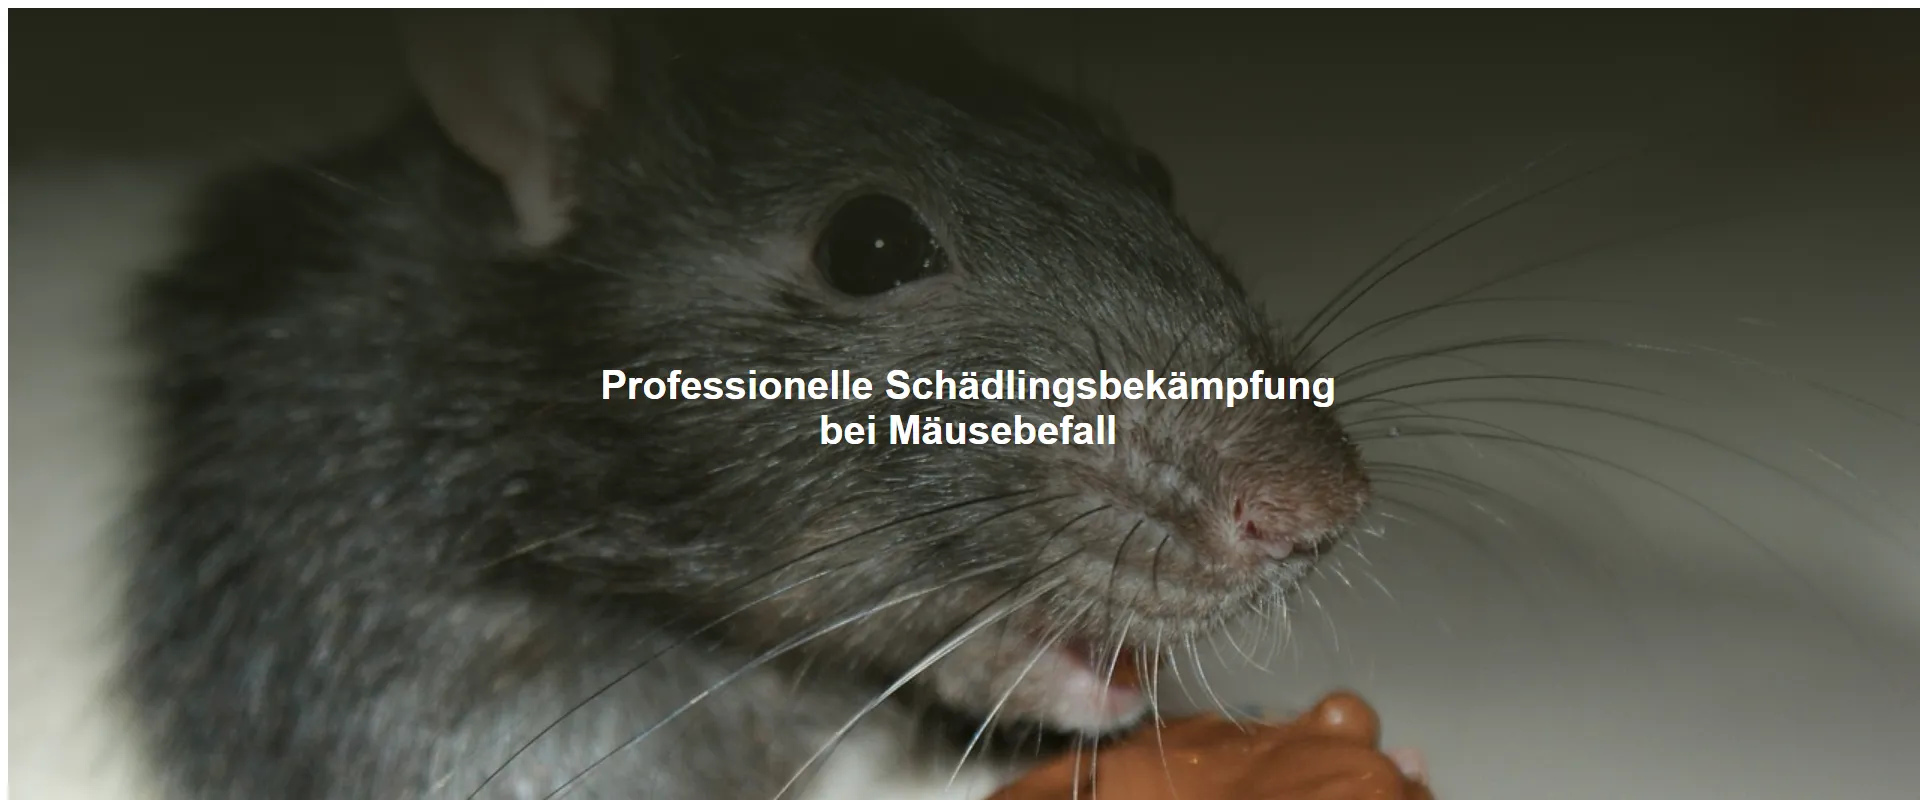 Professionelle Schädlingsbekämpfung bei Mäusebefall